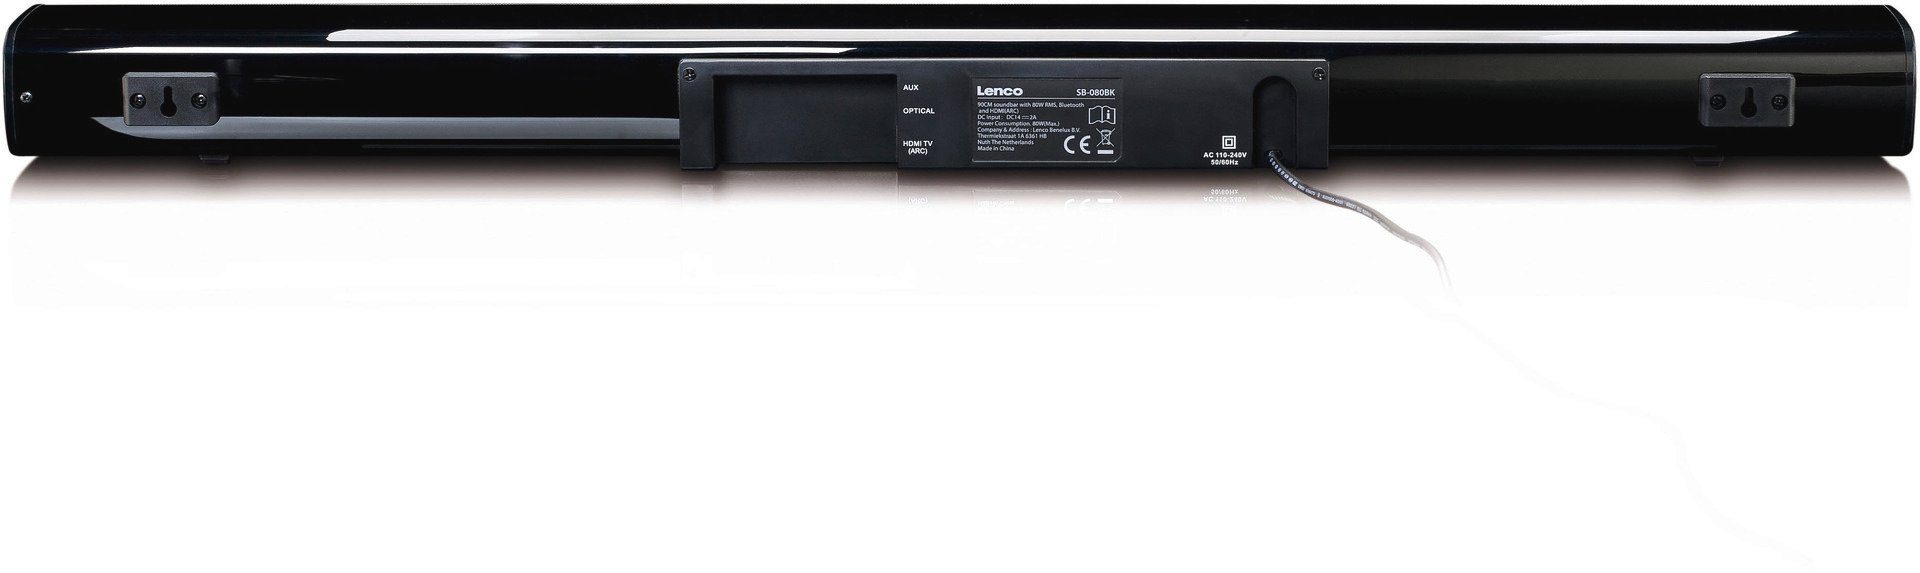 Lenco SB-080 Optical, HDMI (Bluetooth, (ARC), AUX) USB, W, 80W RMS 80 eingebautem mit Subwoofer Digital Soundbar Soundbar 2.1 Bluetooth